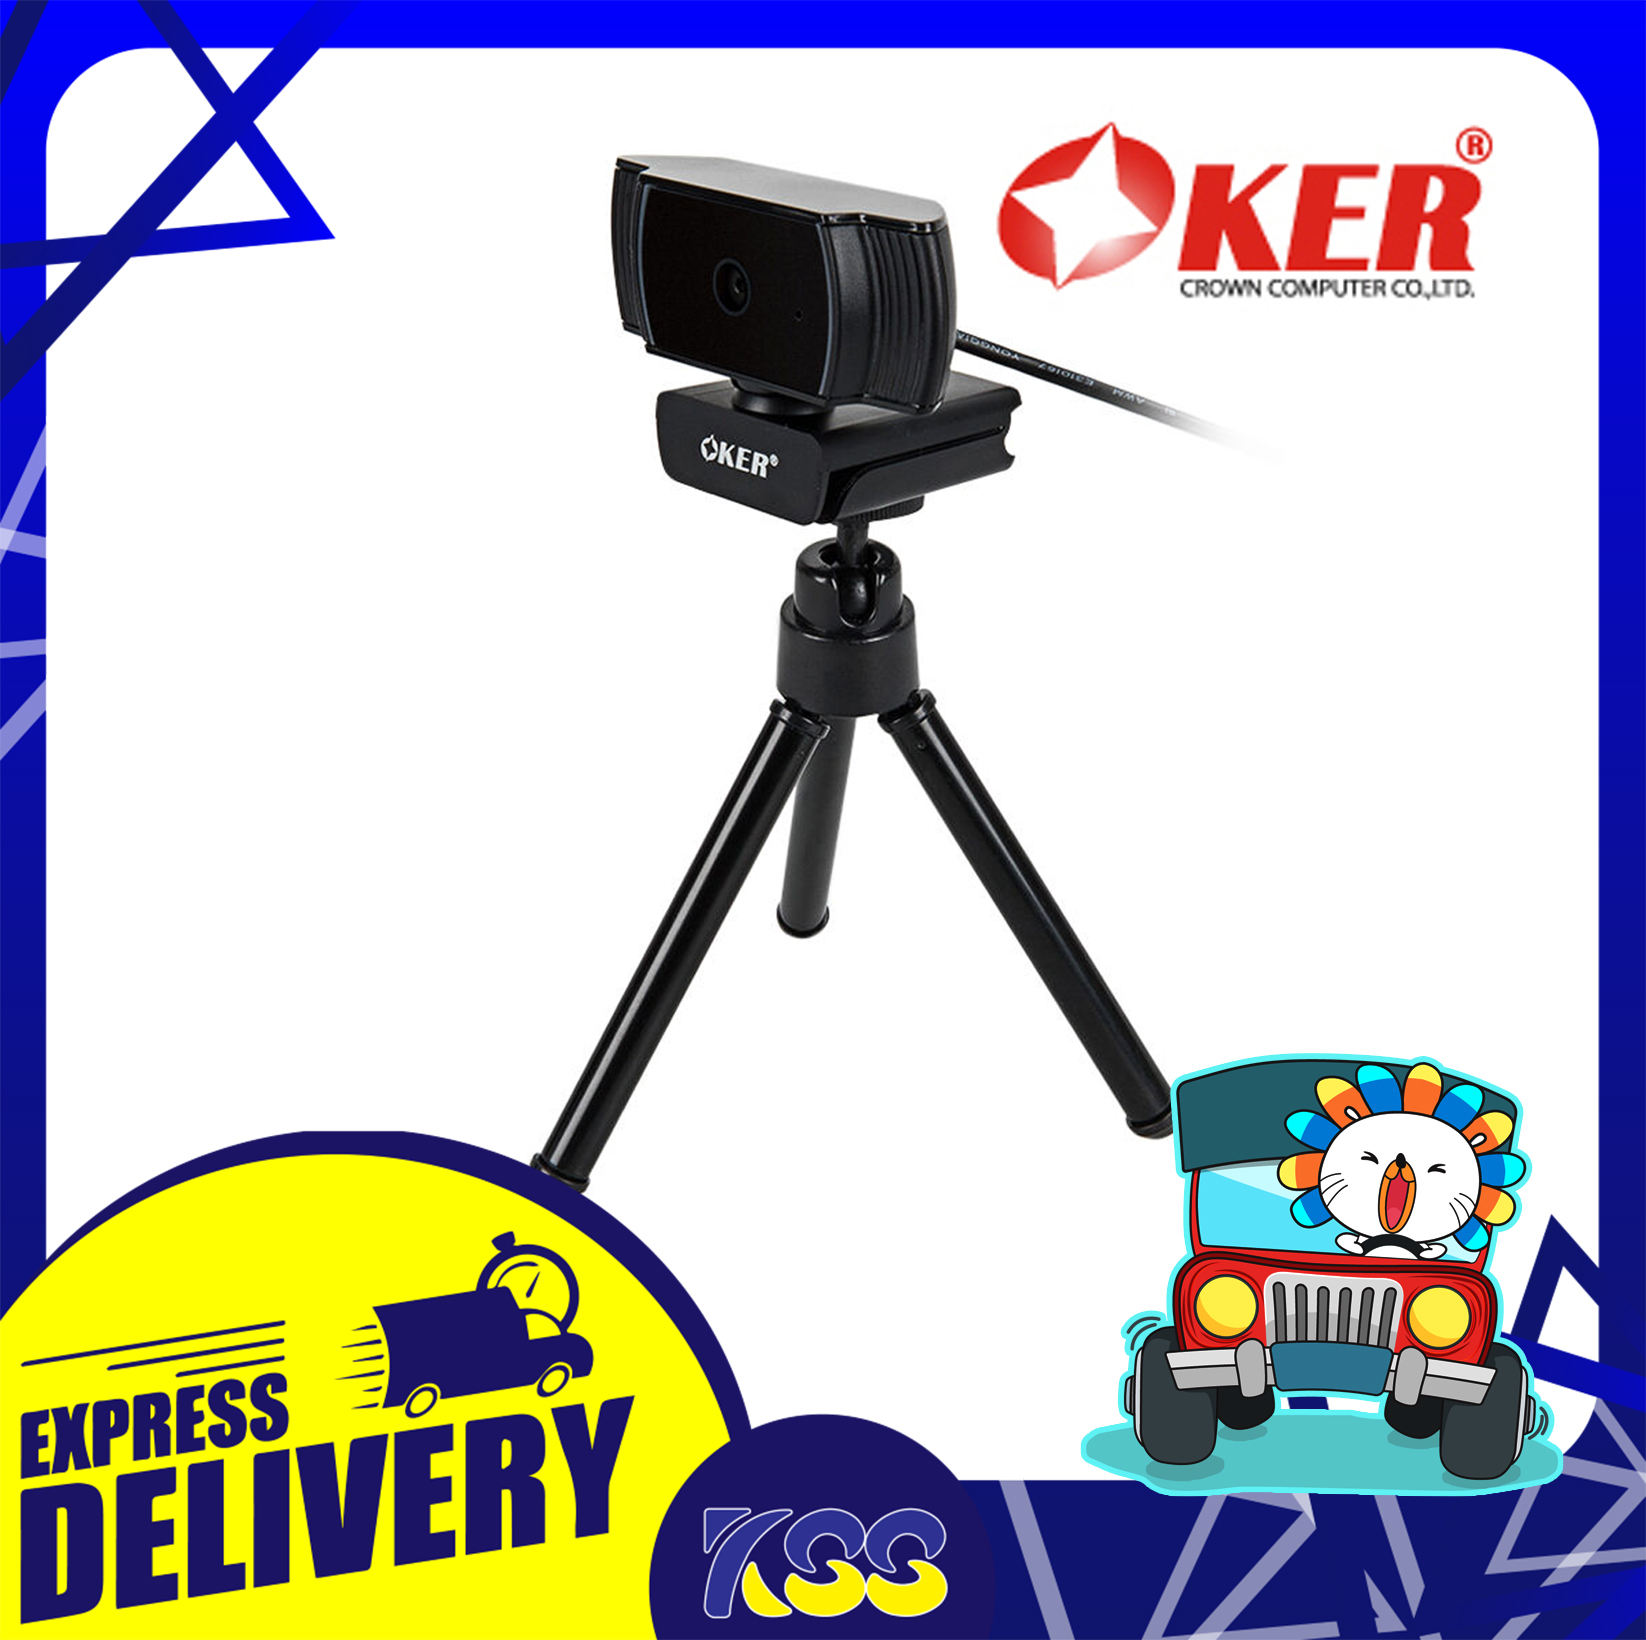 กล้องเว็บแคม WEBCAM OKER A229 Full HD 1080P รองรับ Autofocus มีขาตั้งกล้อง